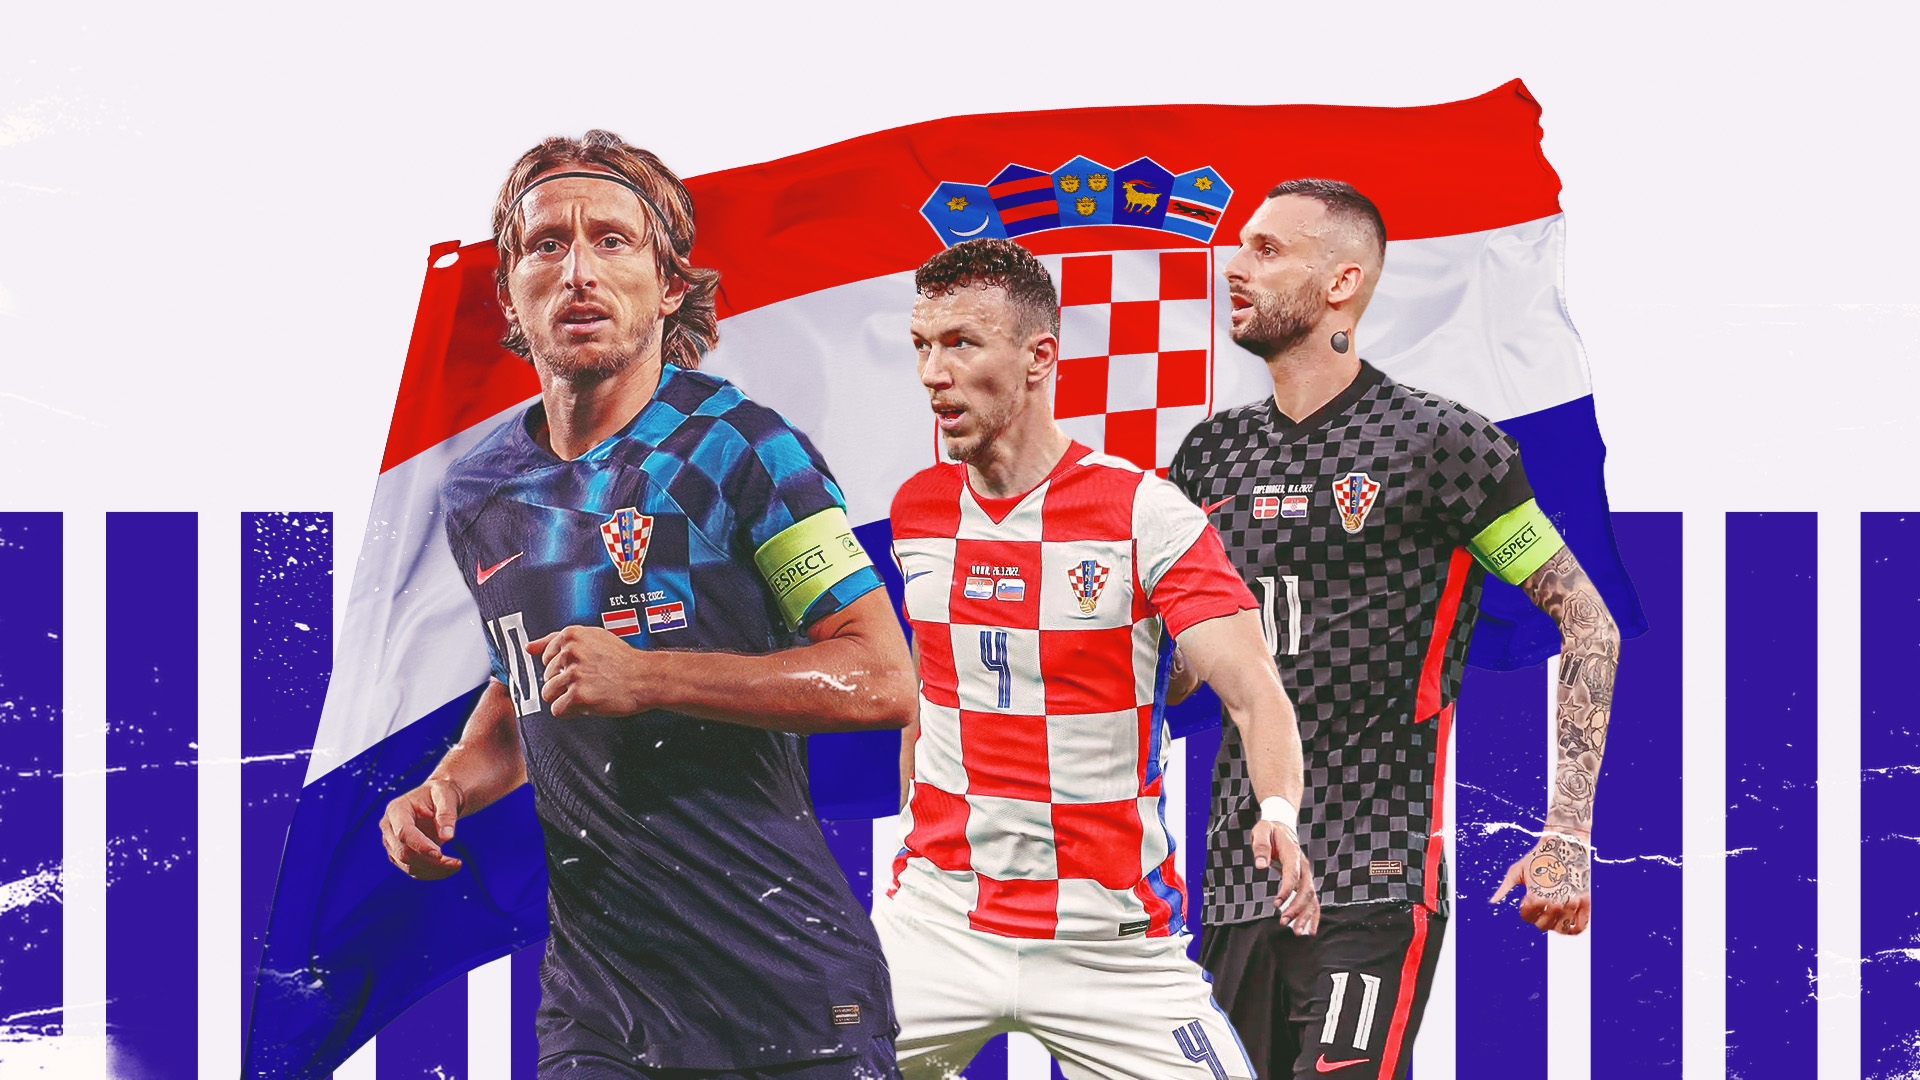 Phong độ đội tuyển Croatia